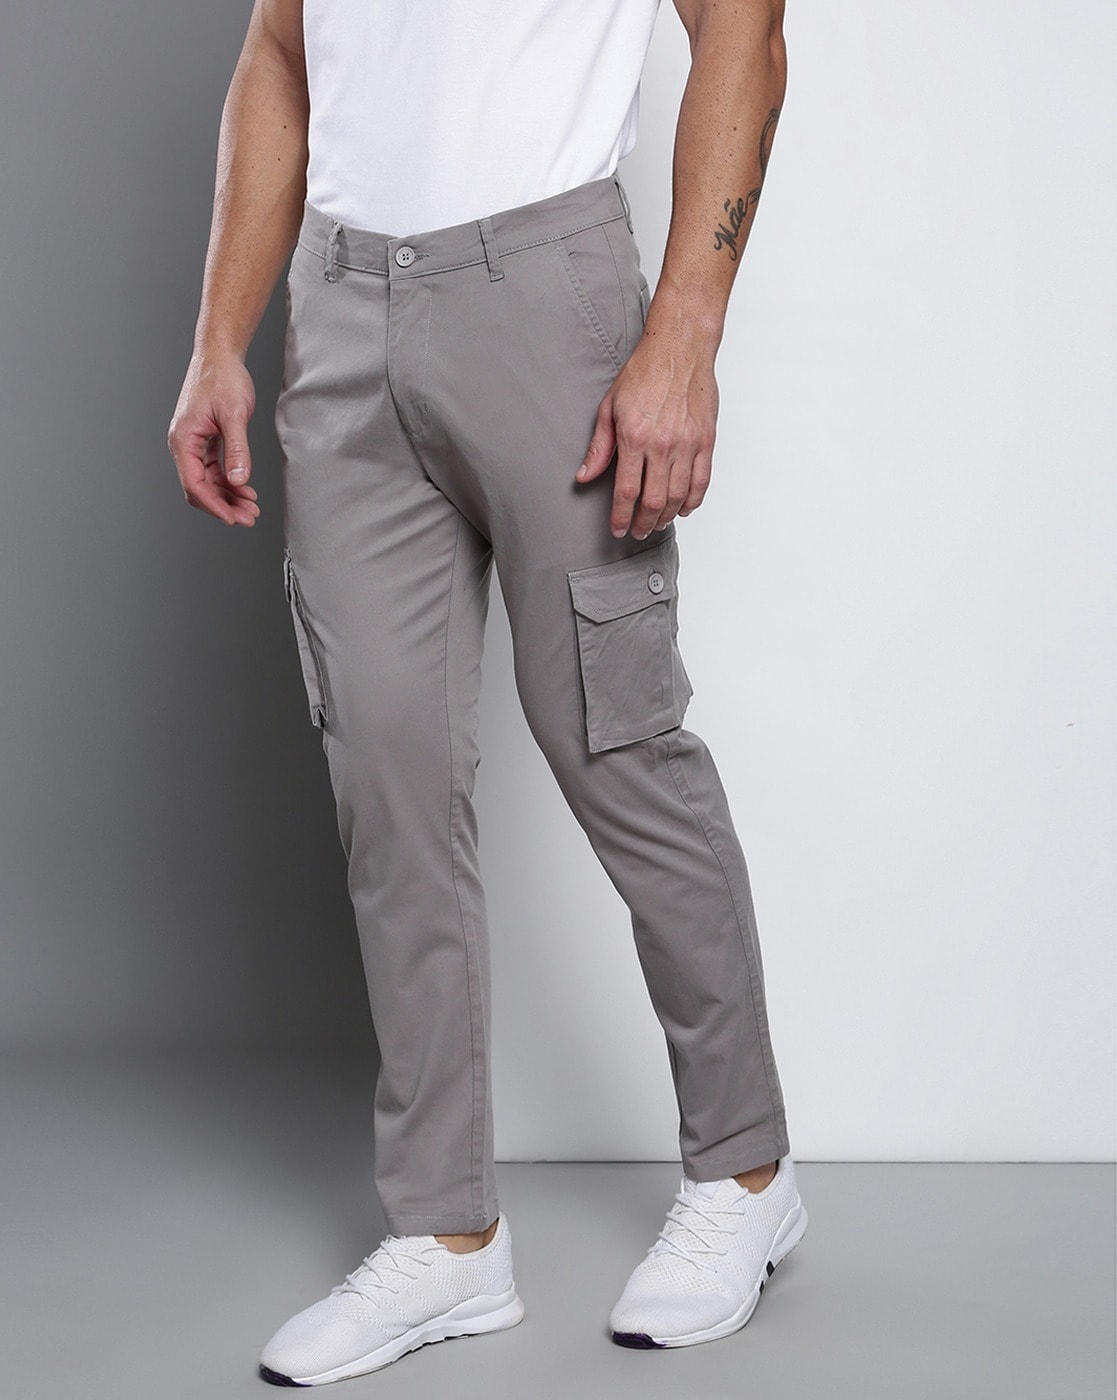 Buy Men's Grey Cargo Pants Online at Bewakoof